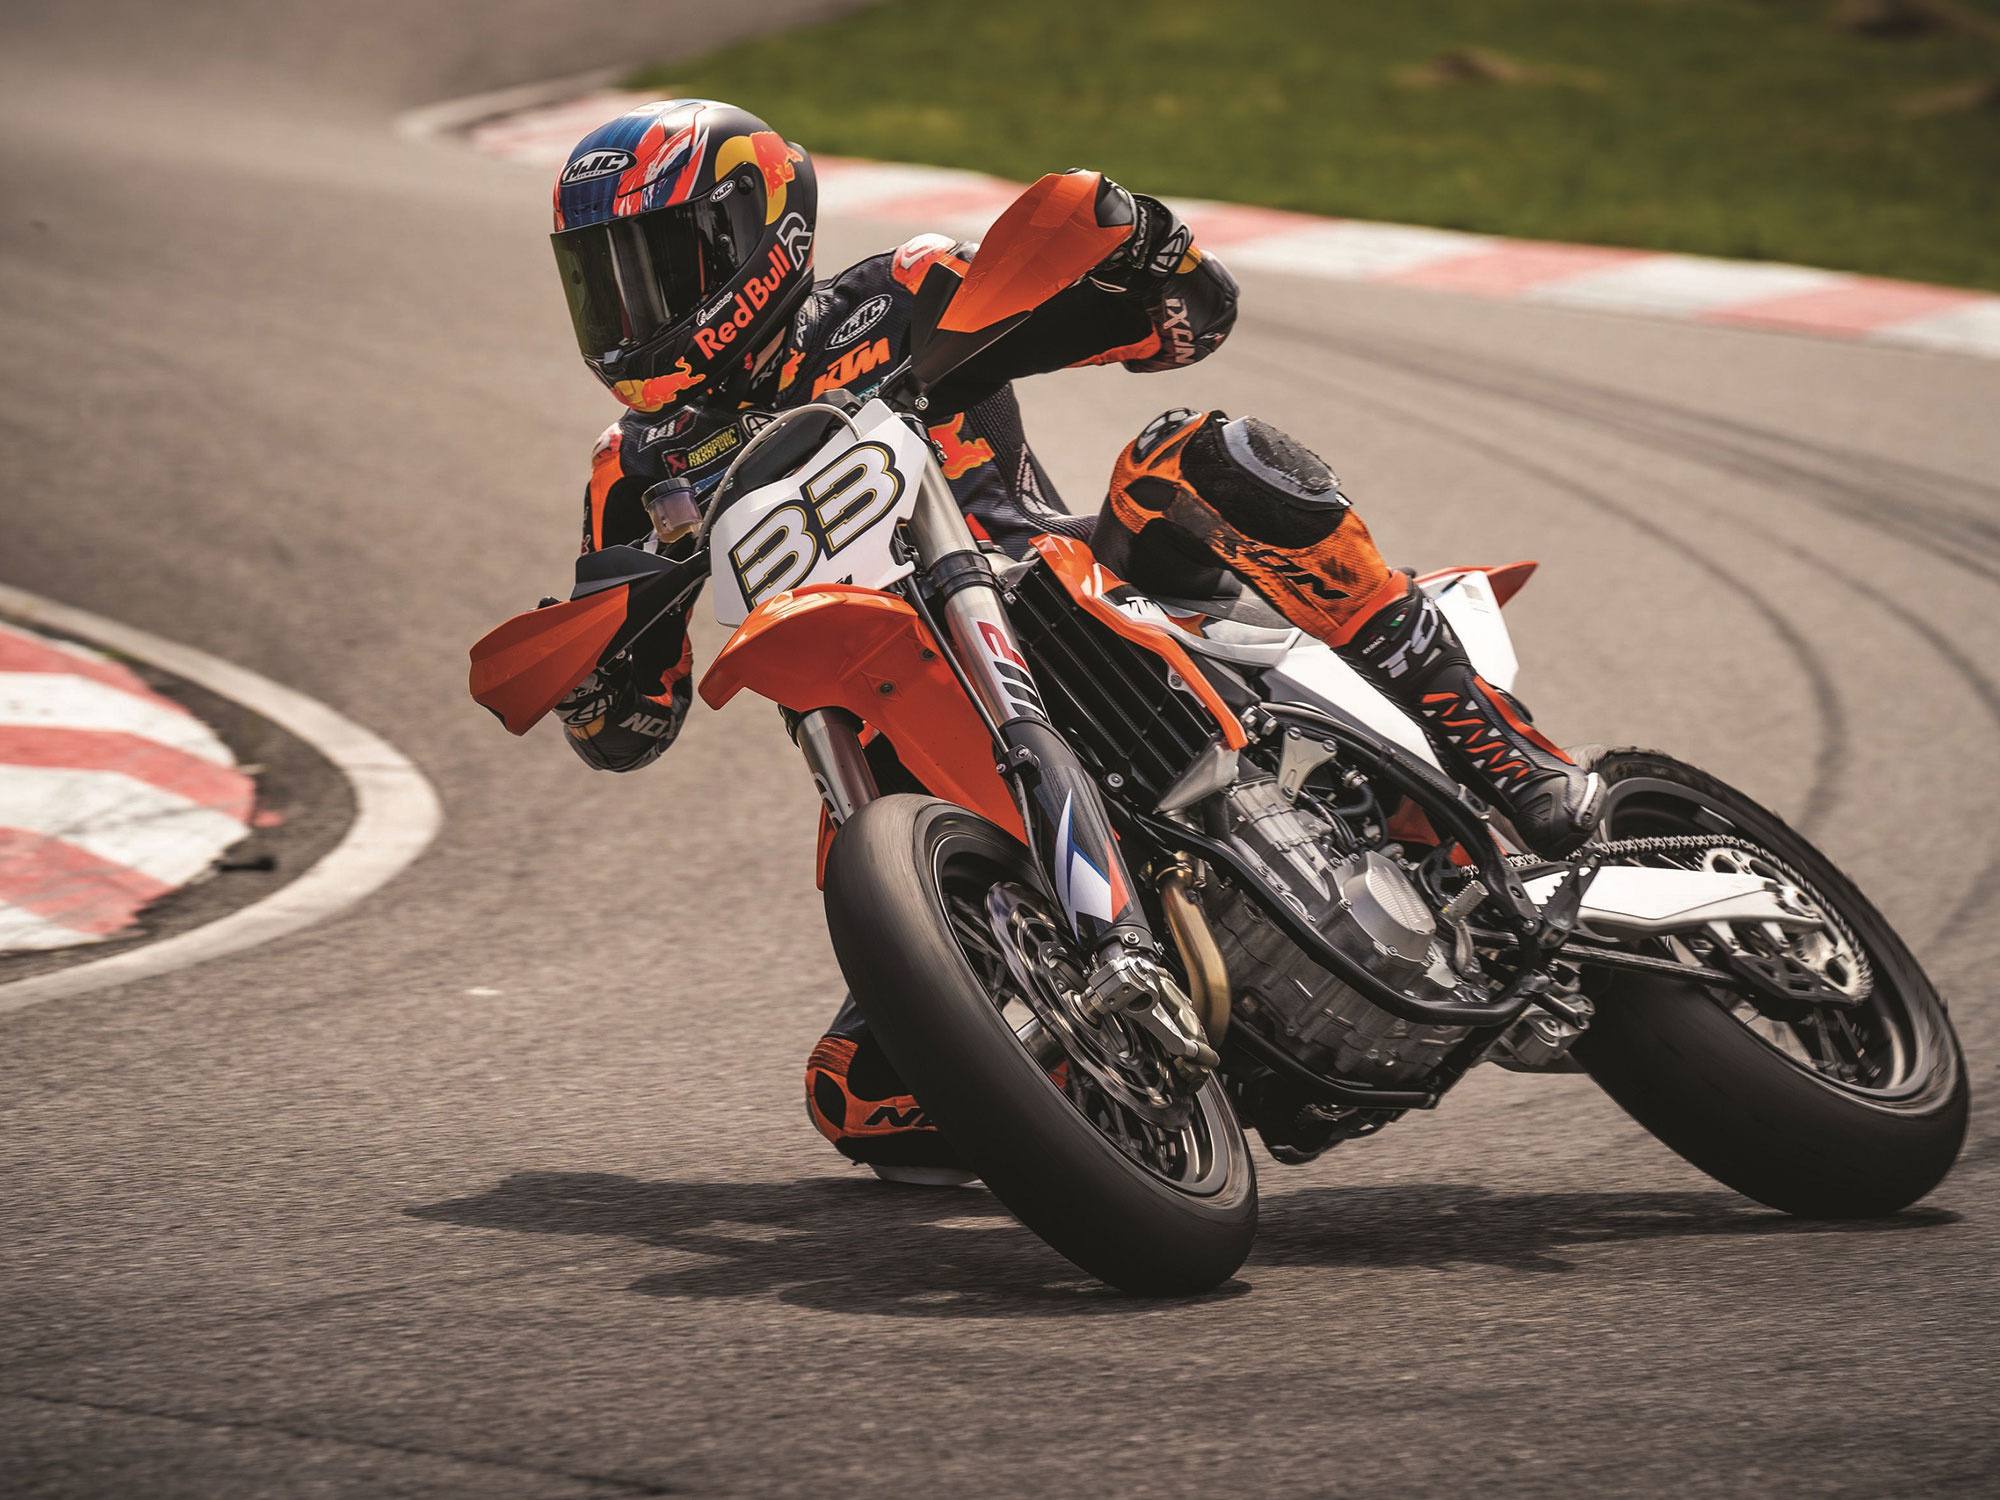 Supermoto: KTM 450 SMR, KTM MotoGP, Rider Brad Binder, Shredding the asphalt. 2000x1500 HD Wallpaper.